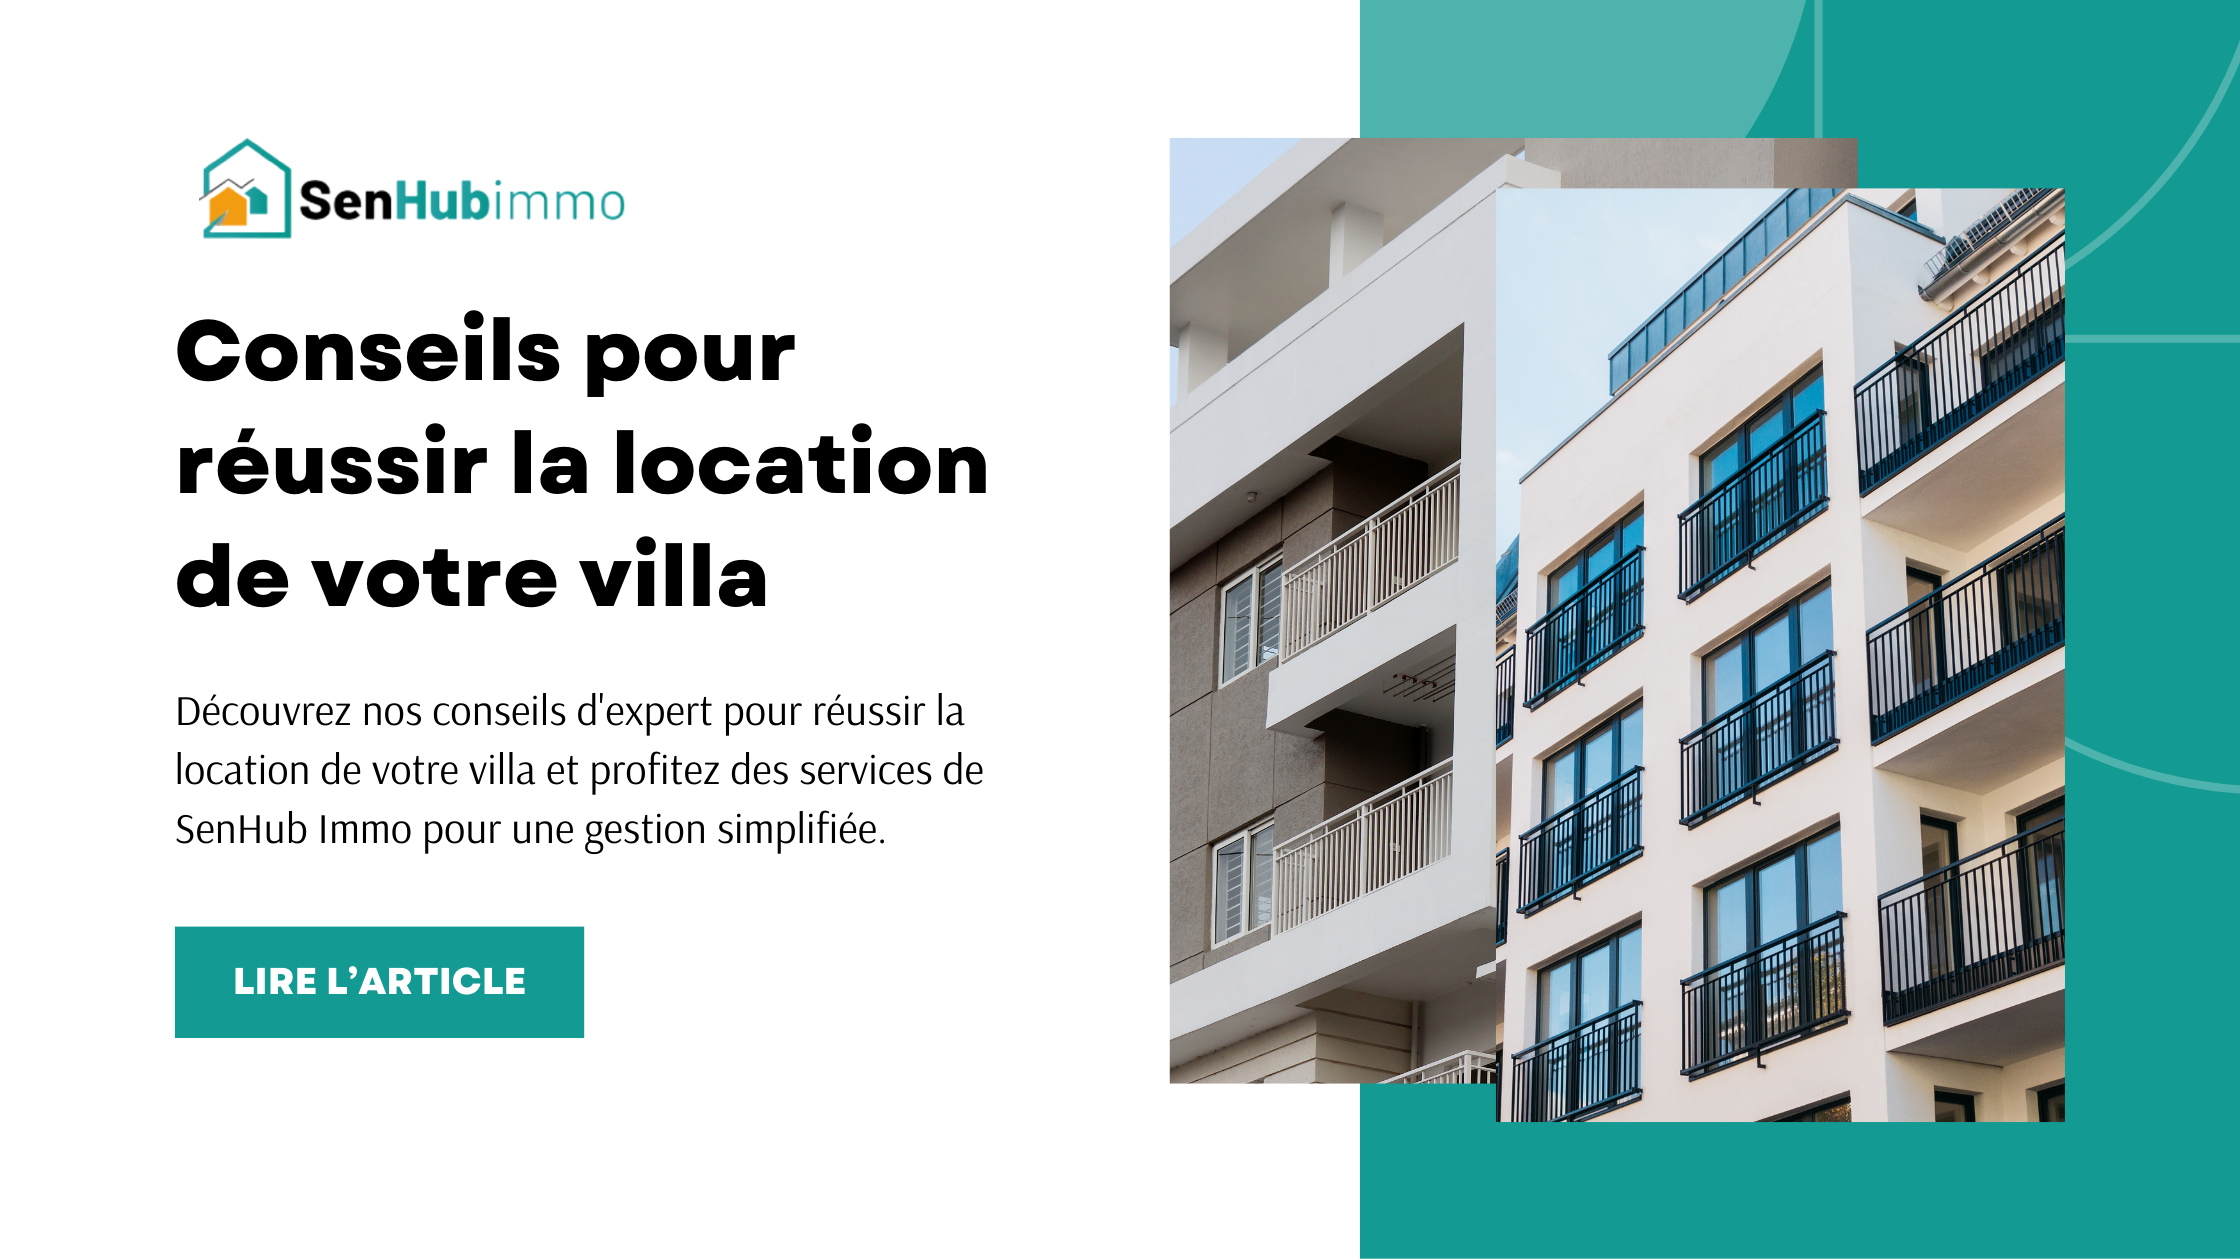 Louer votre villa au Sénégal avec SenHub Immo : Guide complet pour une location réussie